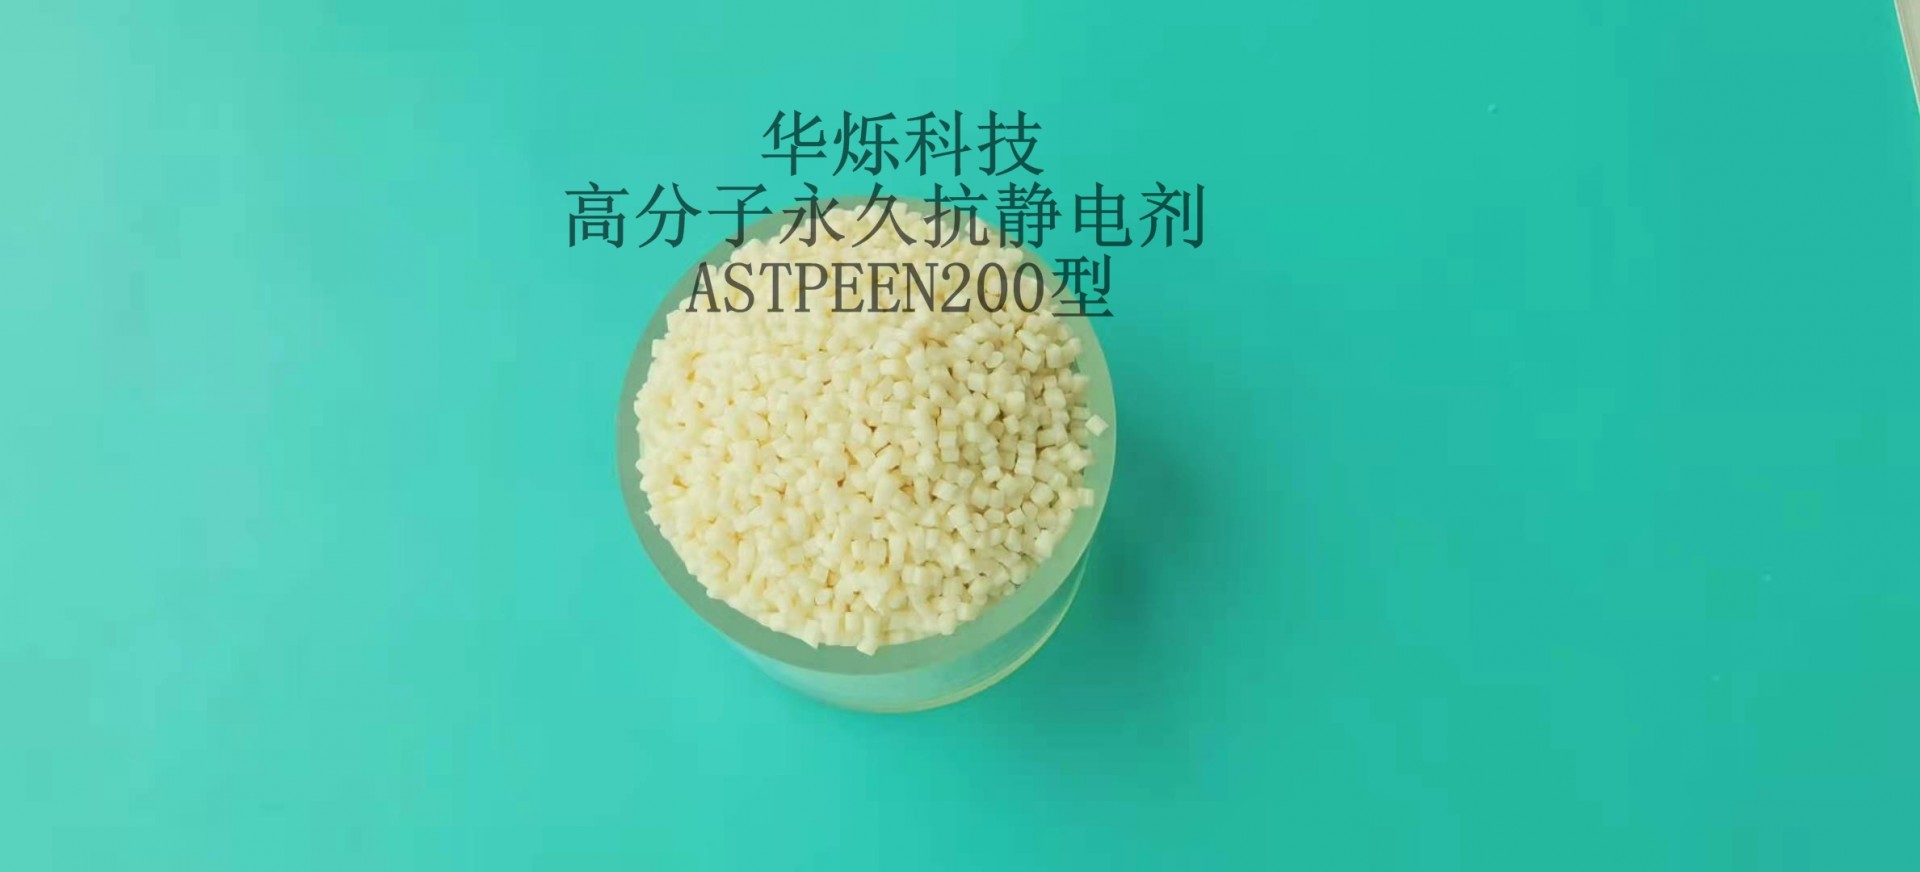 华烁科技高分子永久抗静电剂ASTPEEN200